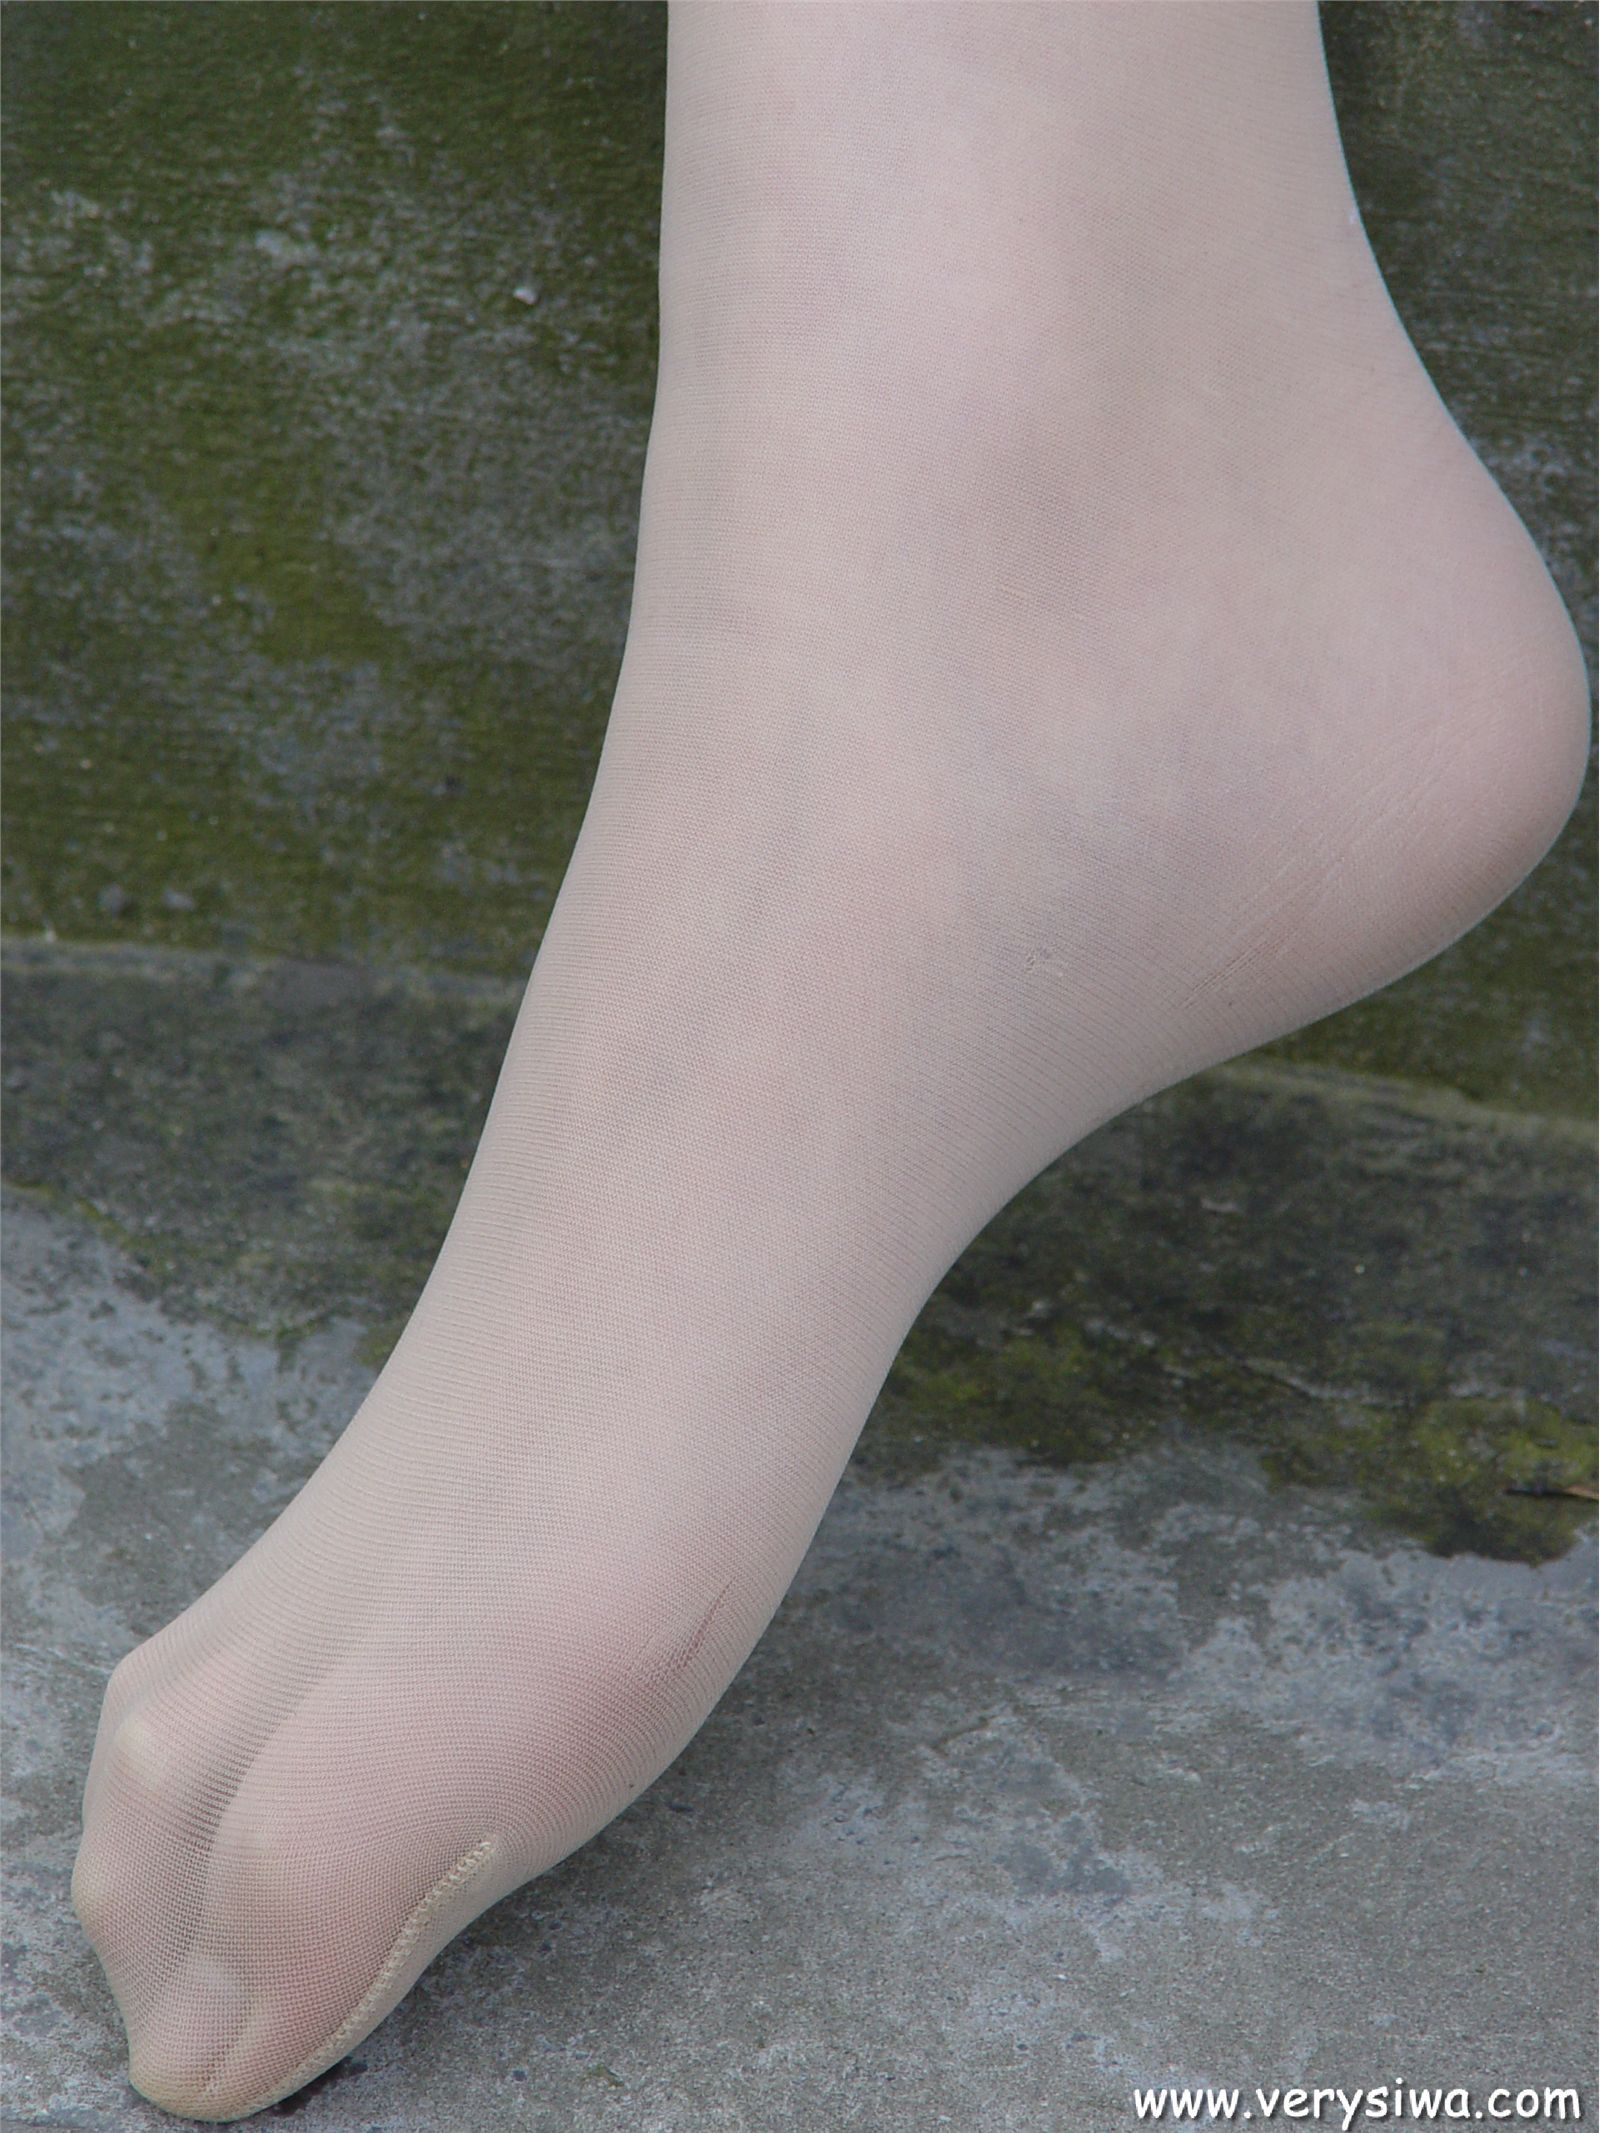 Zhonggaoyi P11 wild silk stockings foot show